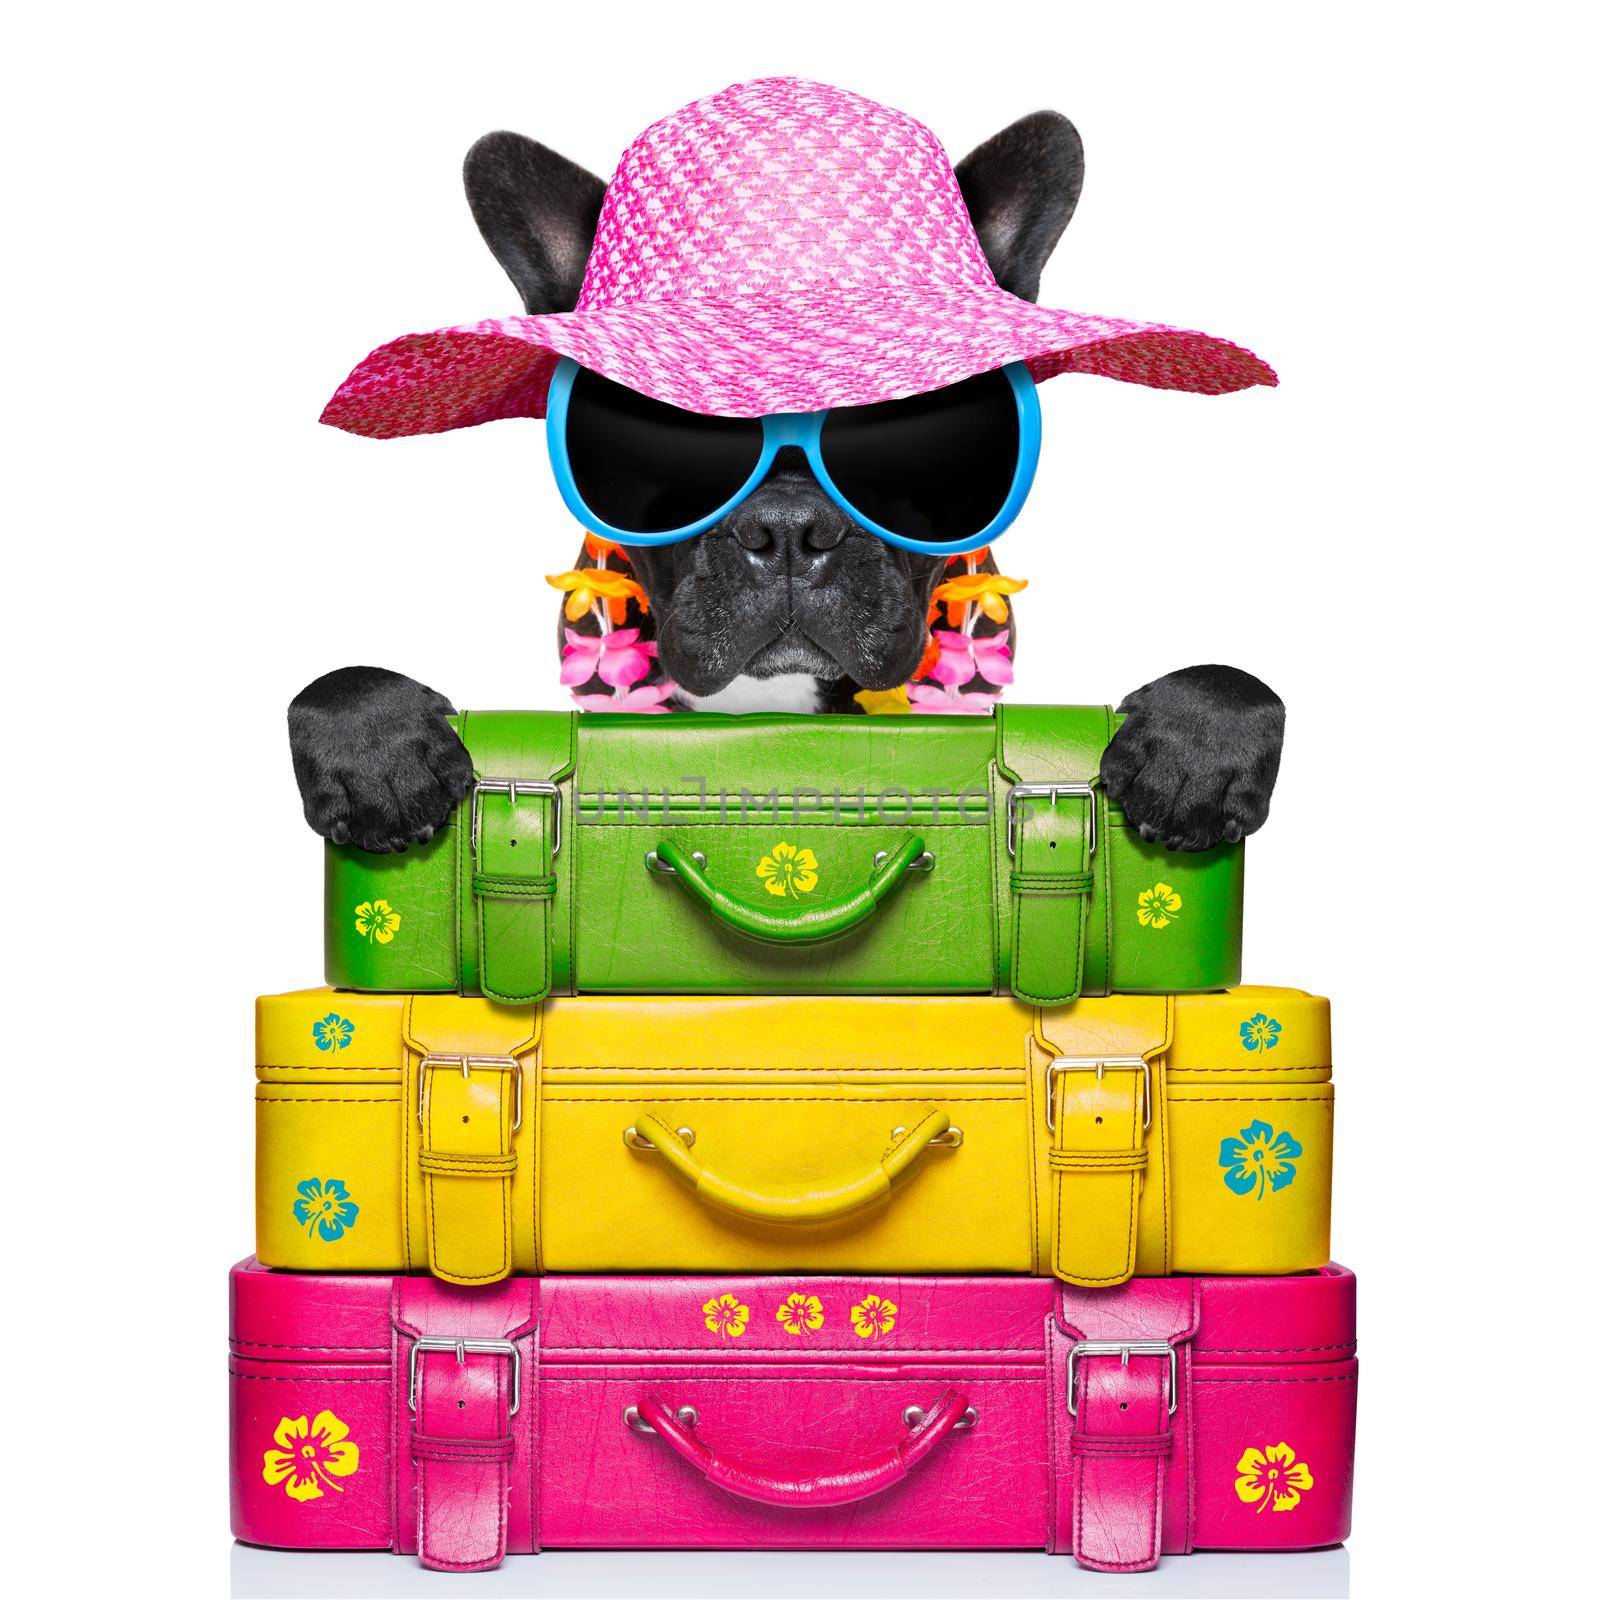 holliday luggage dog by Brosch